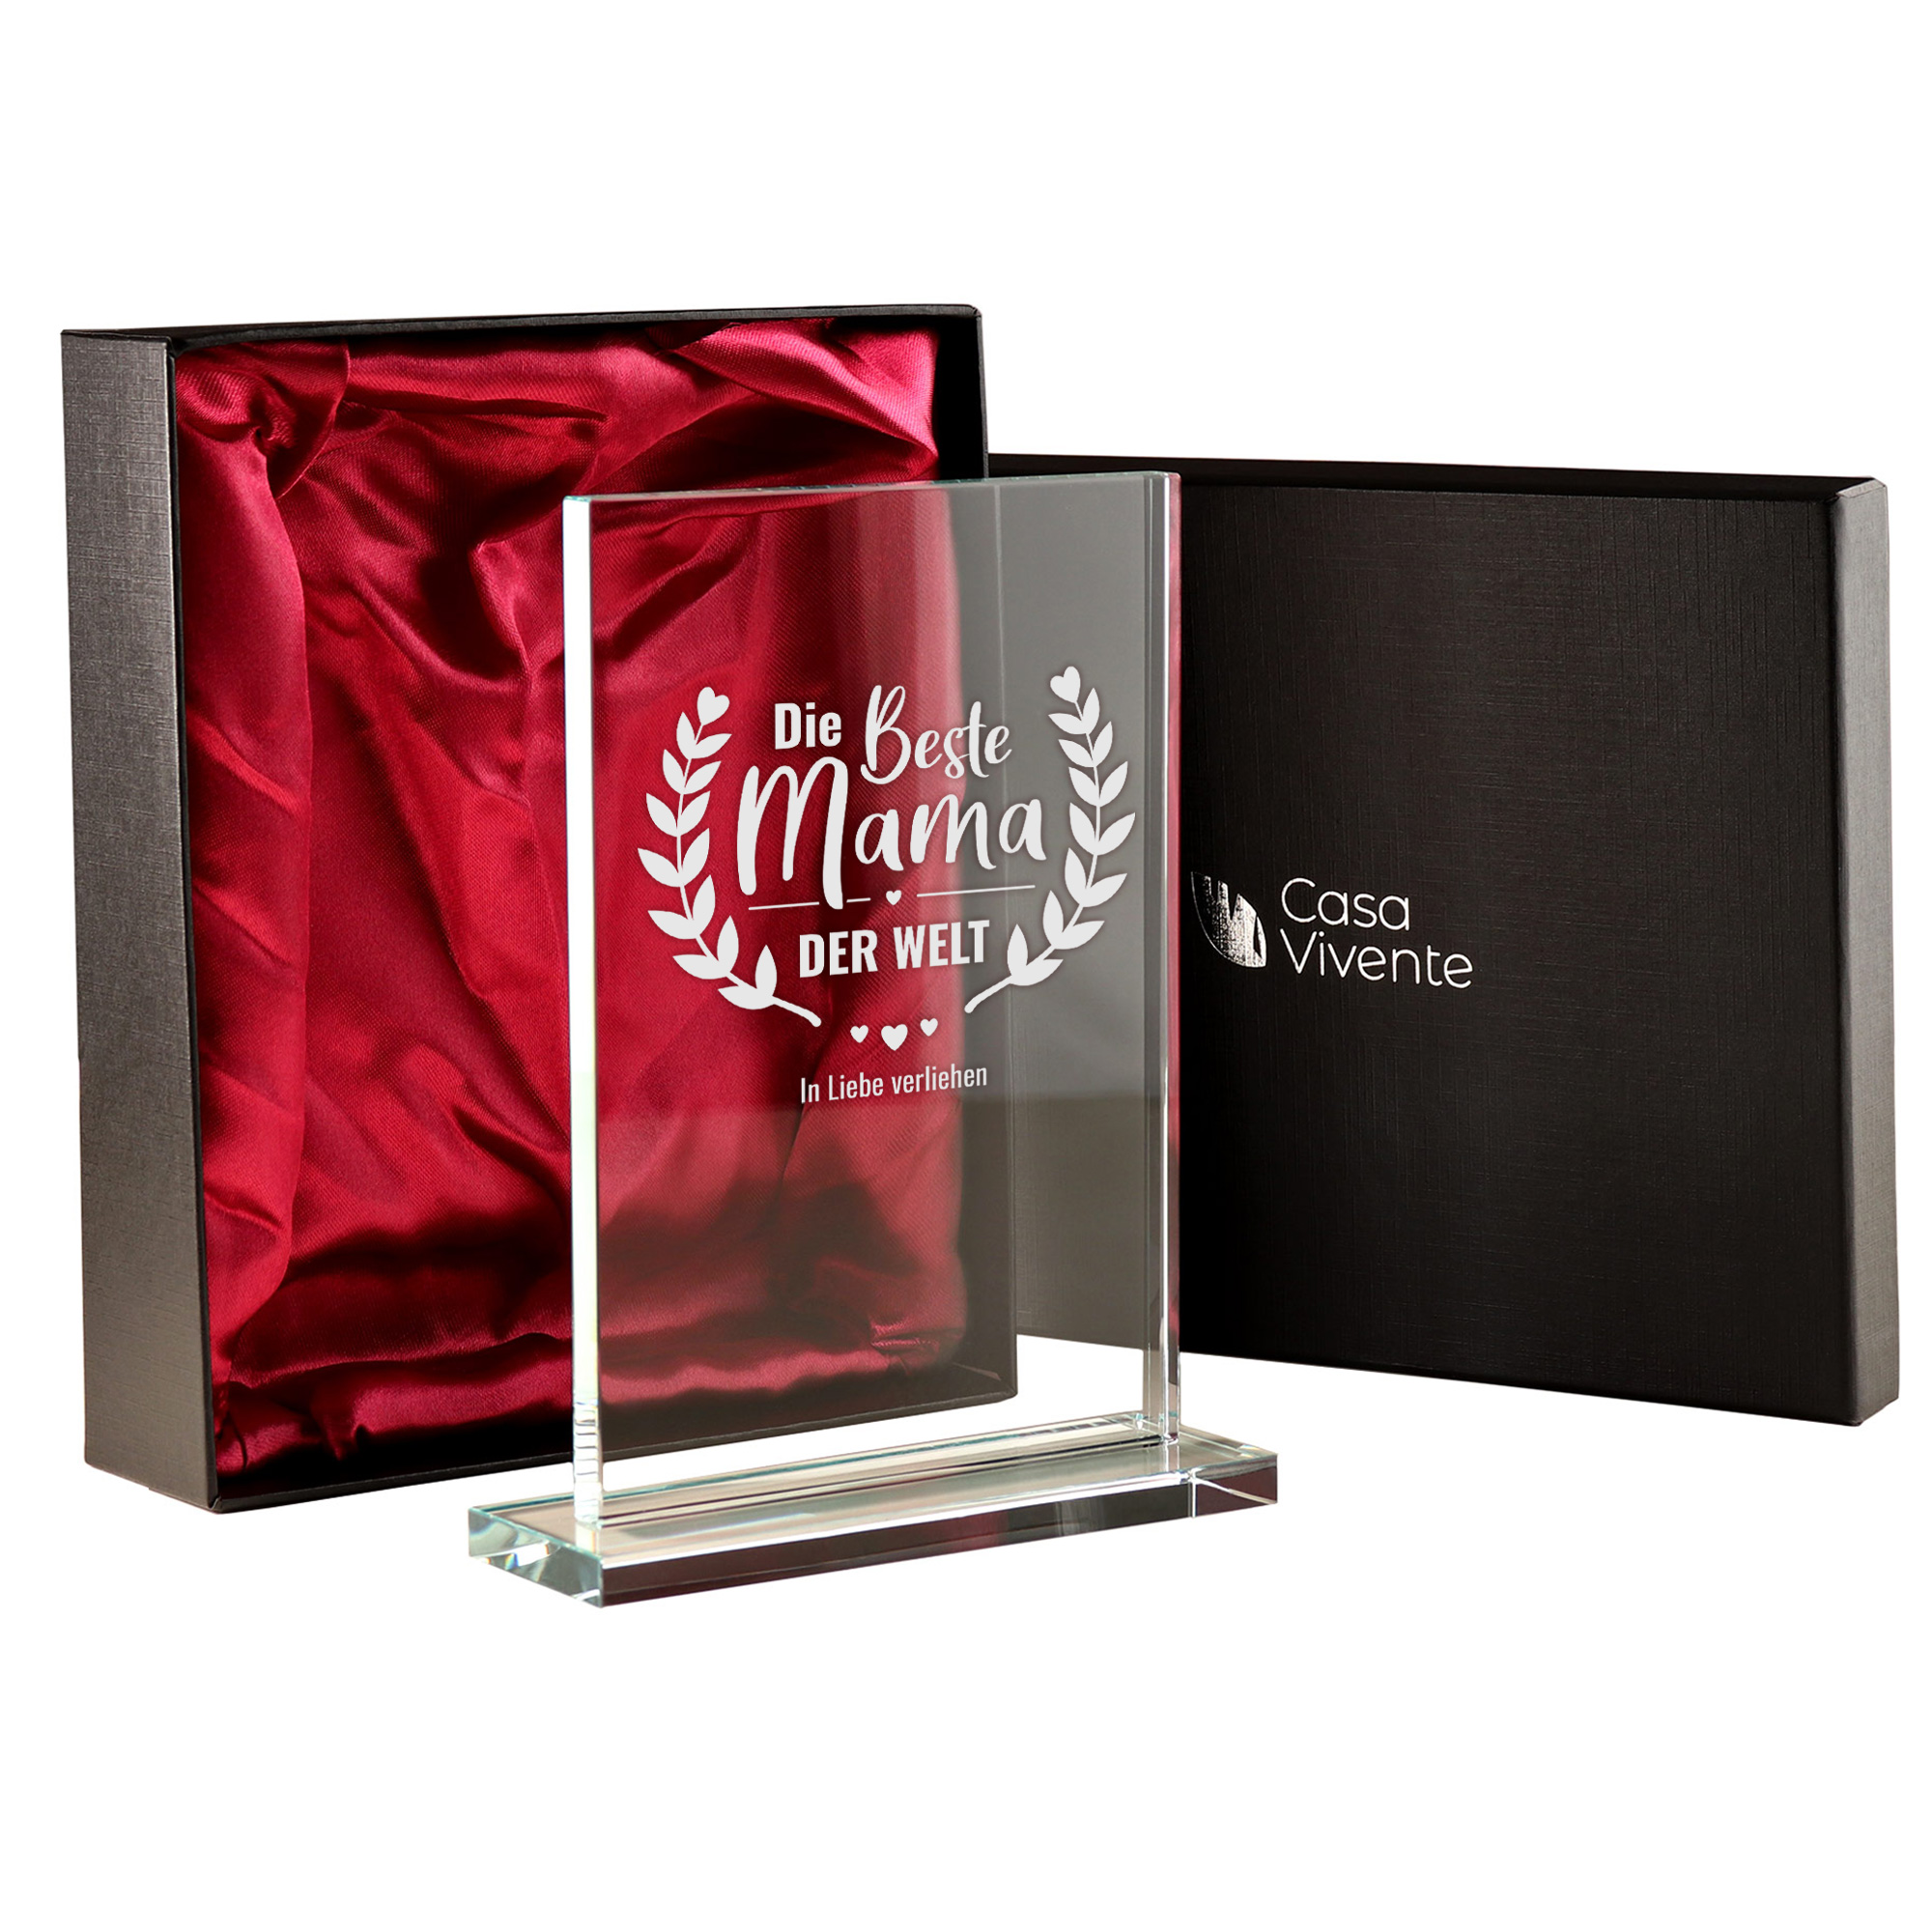 Glaspokal - Auszeichnung für Beste Mama 0021-0001-DE-0001 - 4